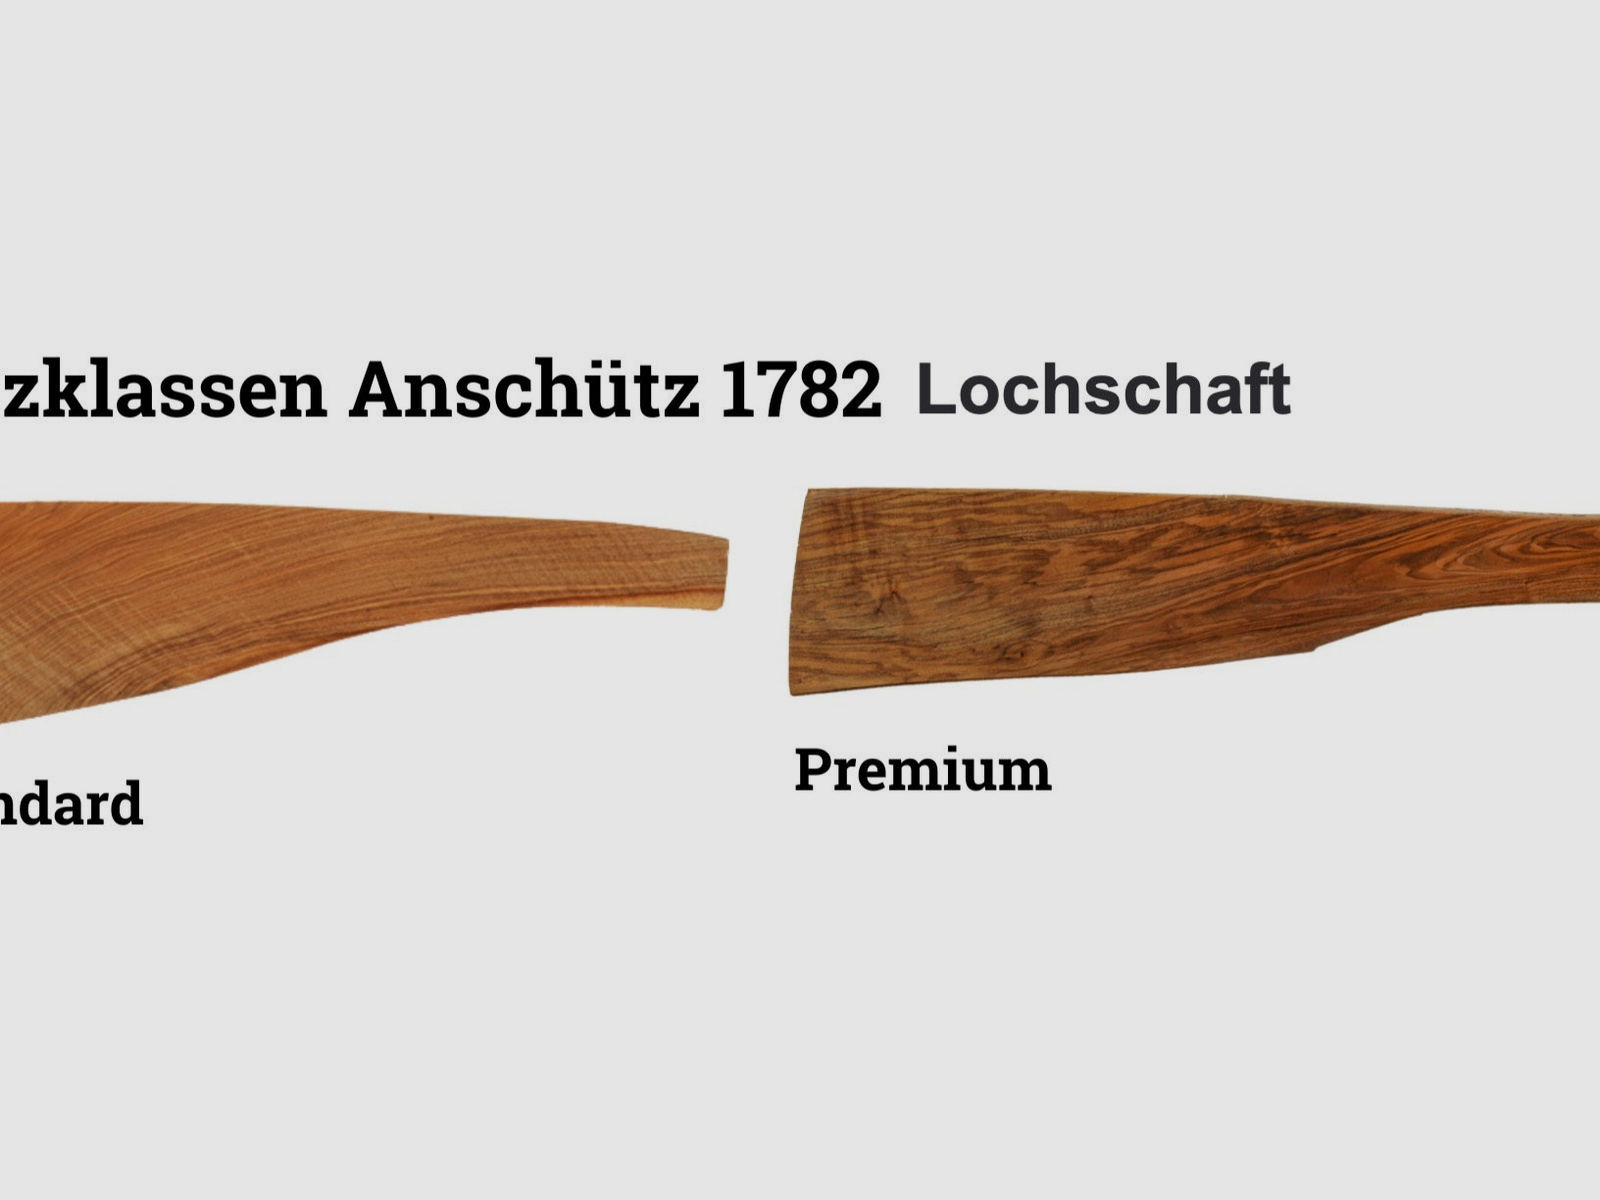 ANSCHÜTZ 1782 Lochschaft